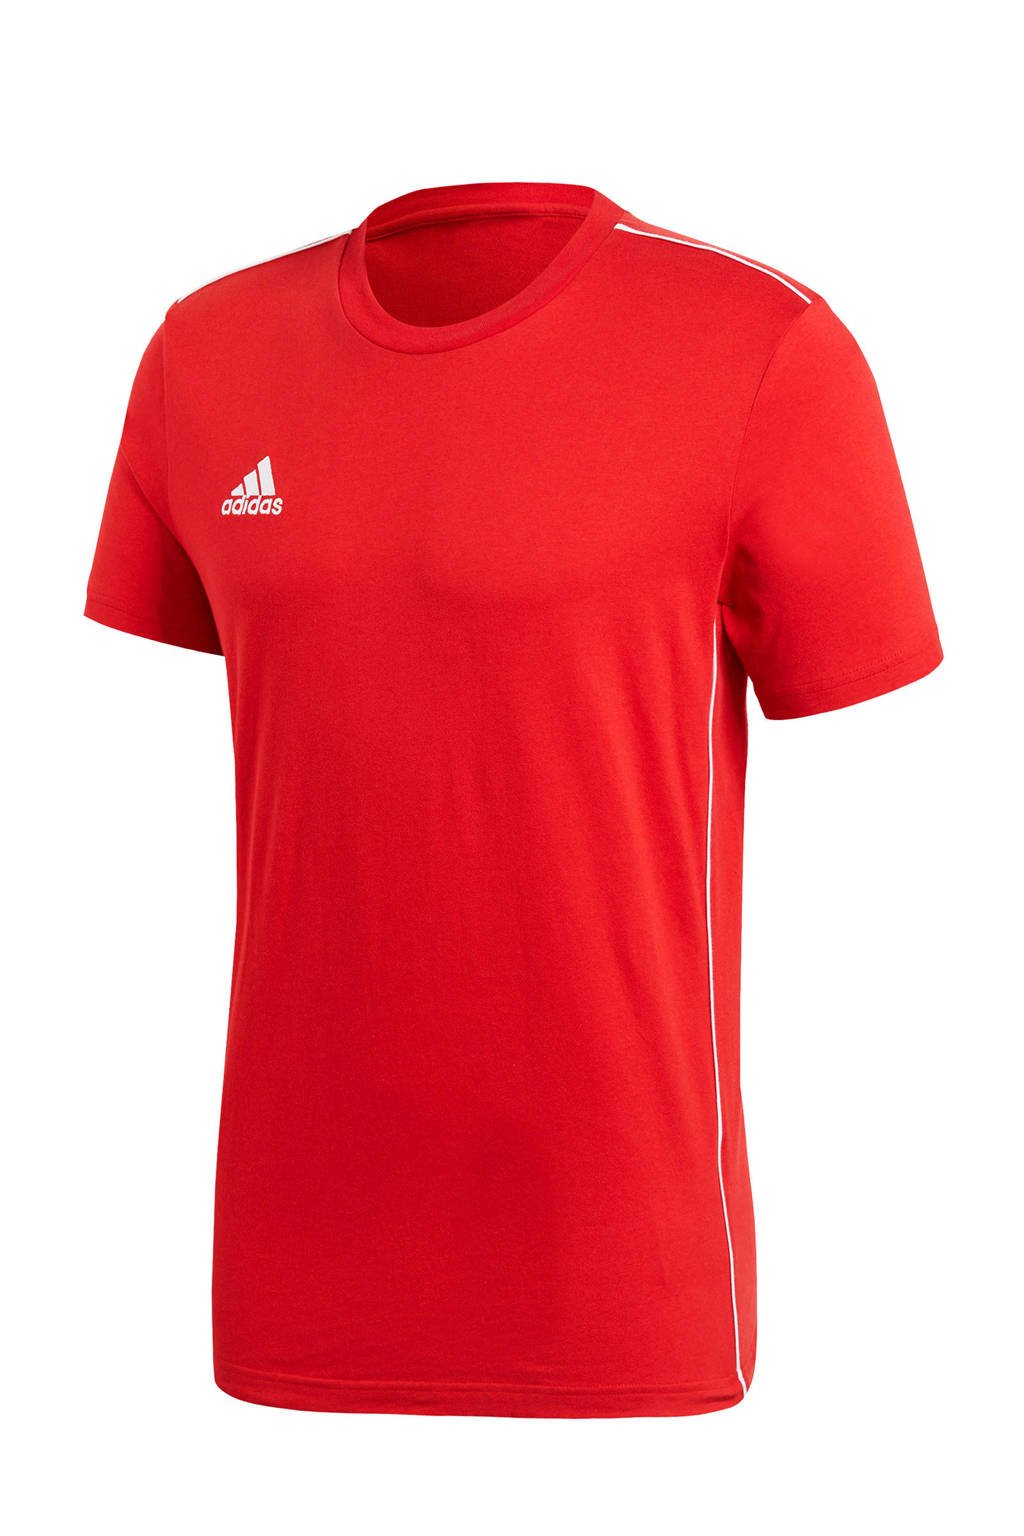 Rood en witte heren adidas Performance sport T-shirt Core 18 van katoen met logo dessin, korte mouwen en ronde hals